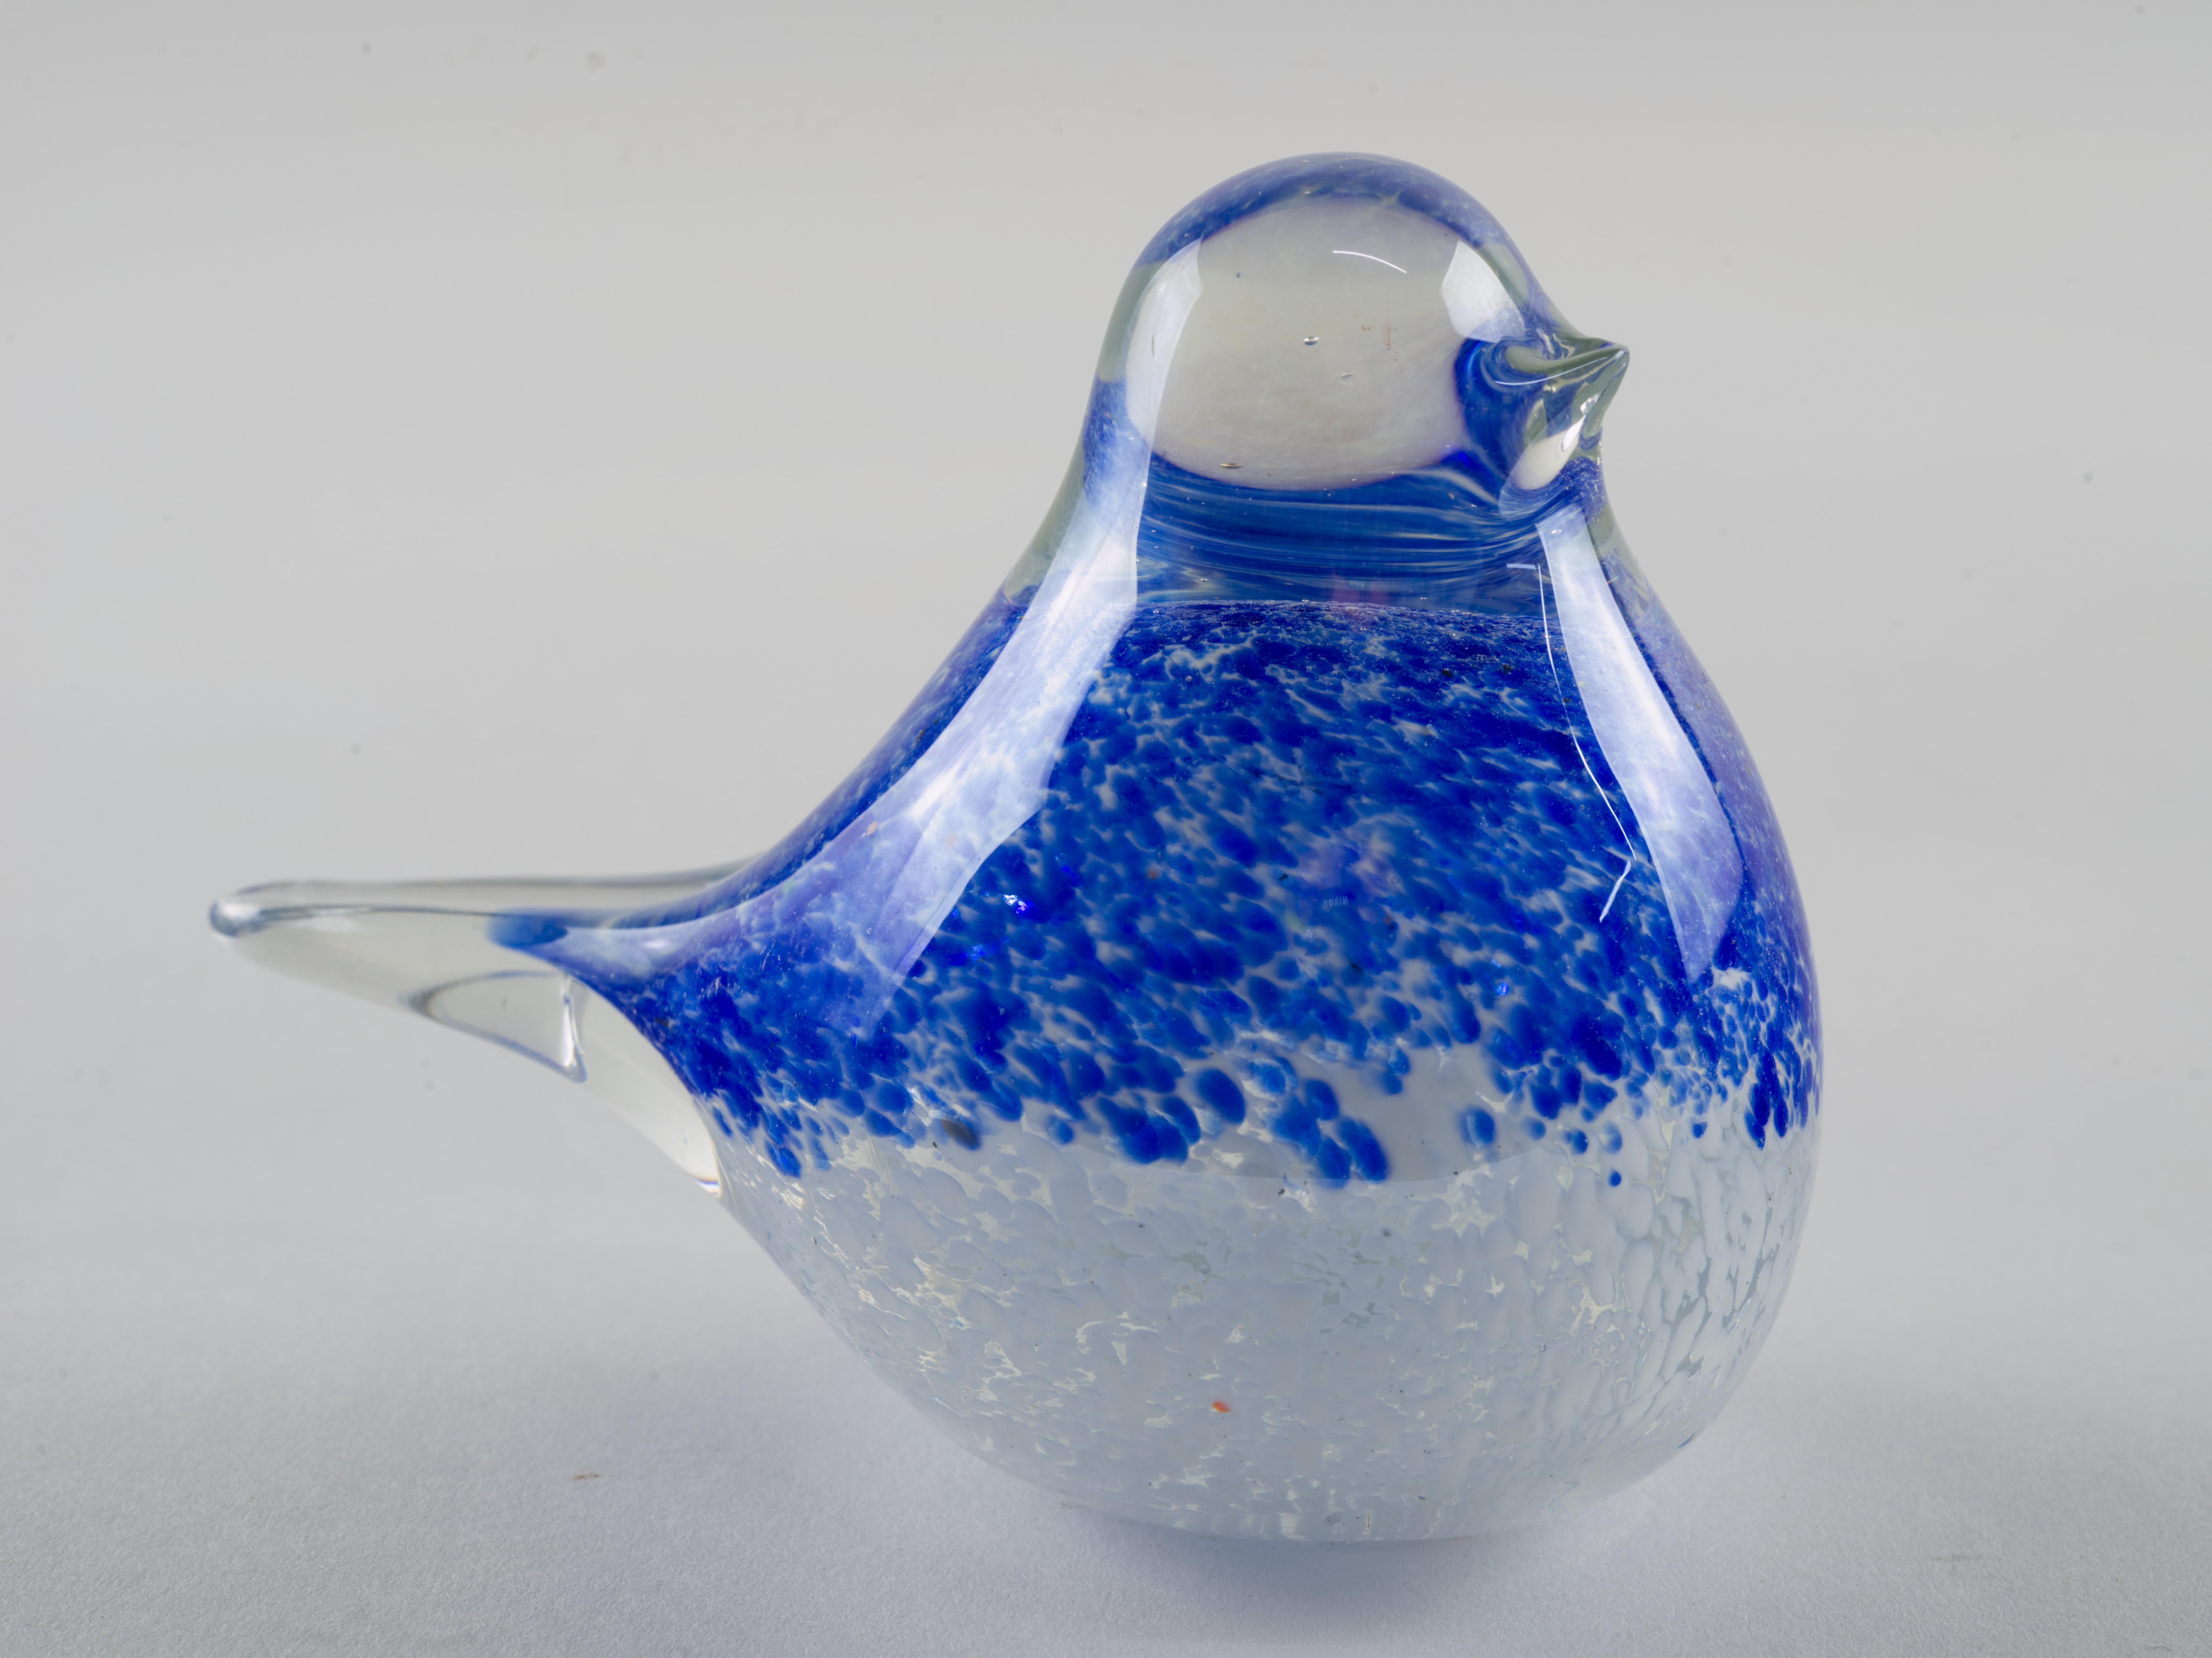  Abstrakte blaue Kunstglas-Vogelfigur wurde in Sommerso-Technik mundgeblasen, mit Rauch und weiß gesprenkelter Raffung von farbigem Glas in Klarglas eingeschlossen. Minimalistischer, skulpturaler Schwanz und Schnabel stehen im Gegensatz zum runden